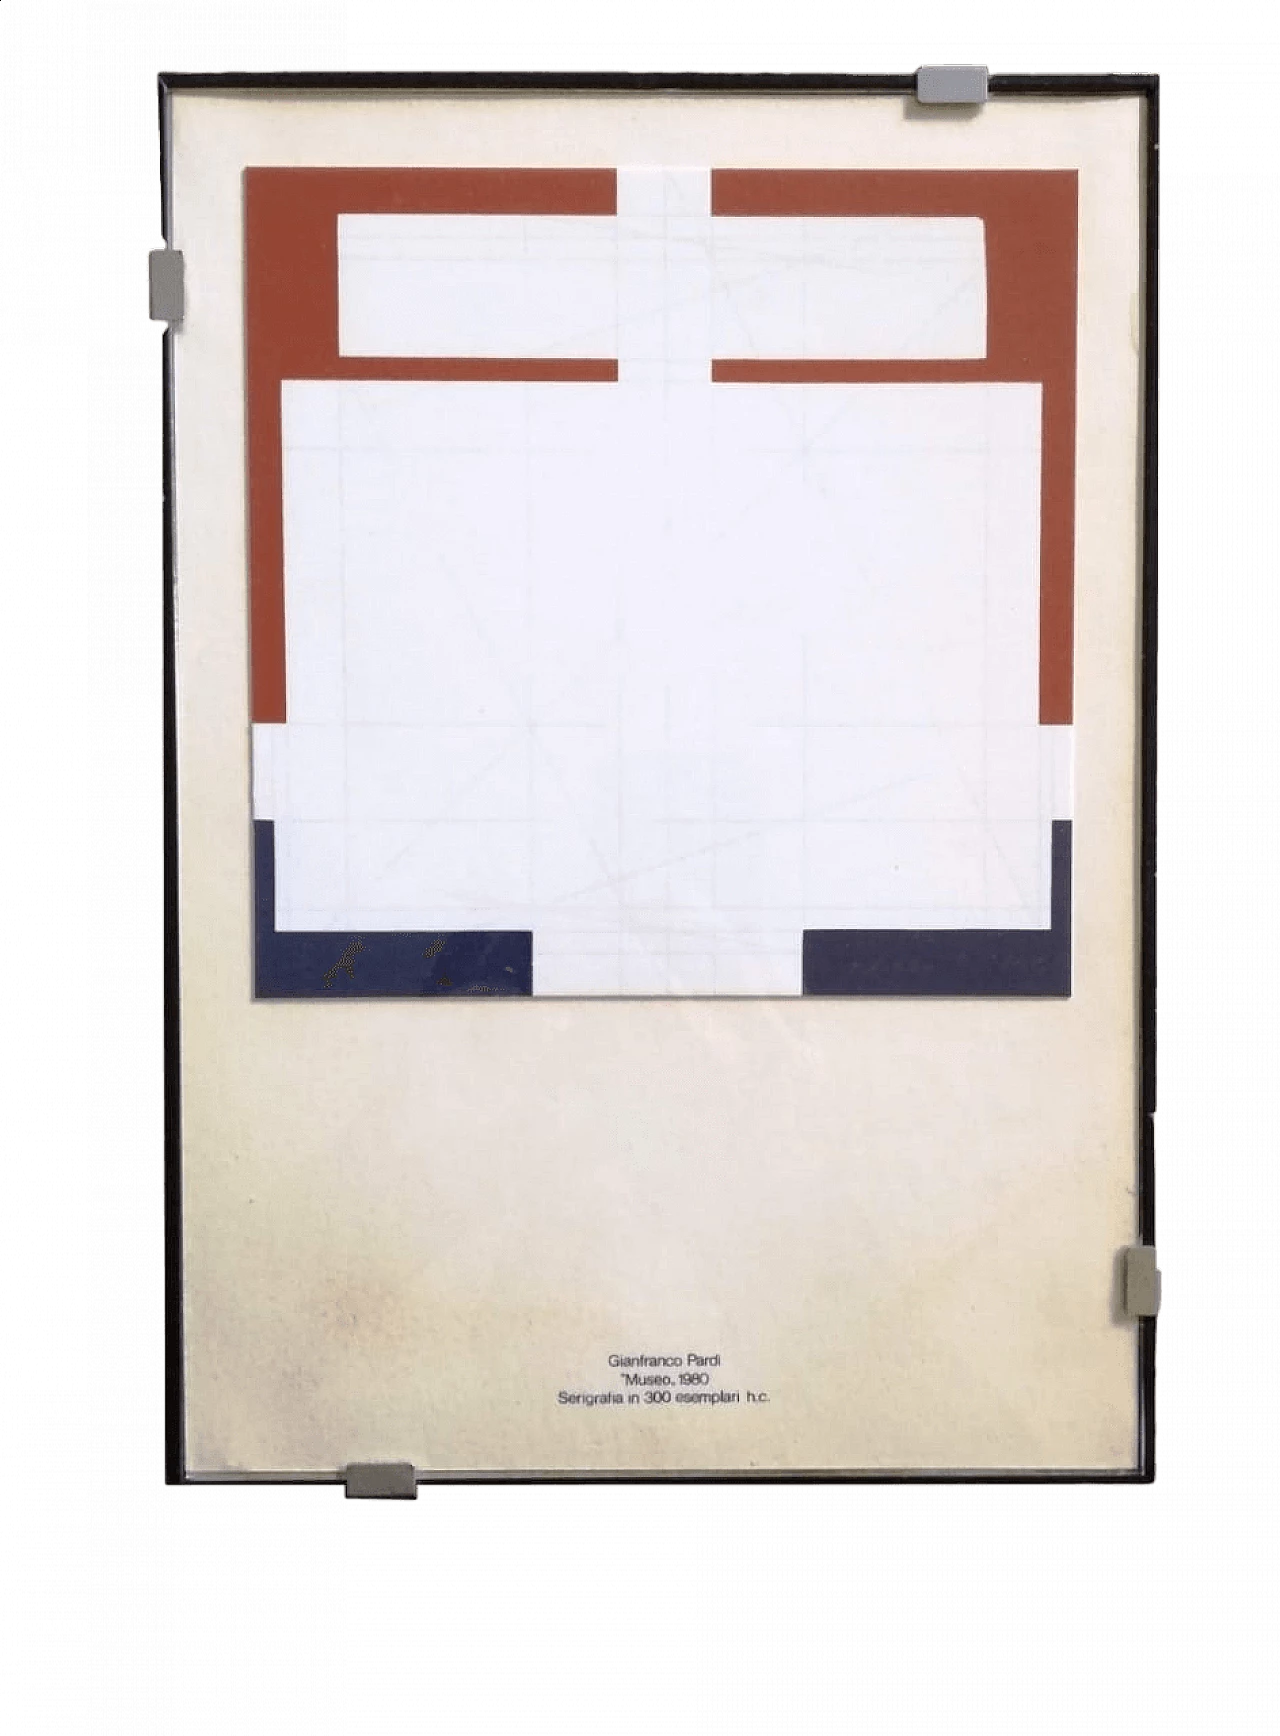 Gianfranco Pardi, Museum, screen print, 1980 7